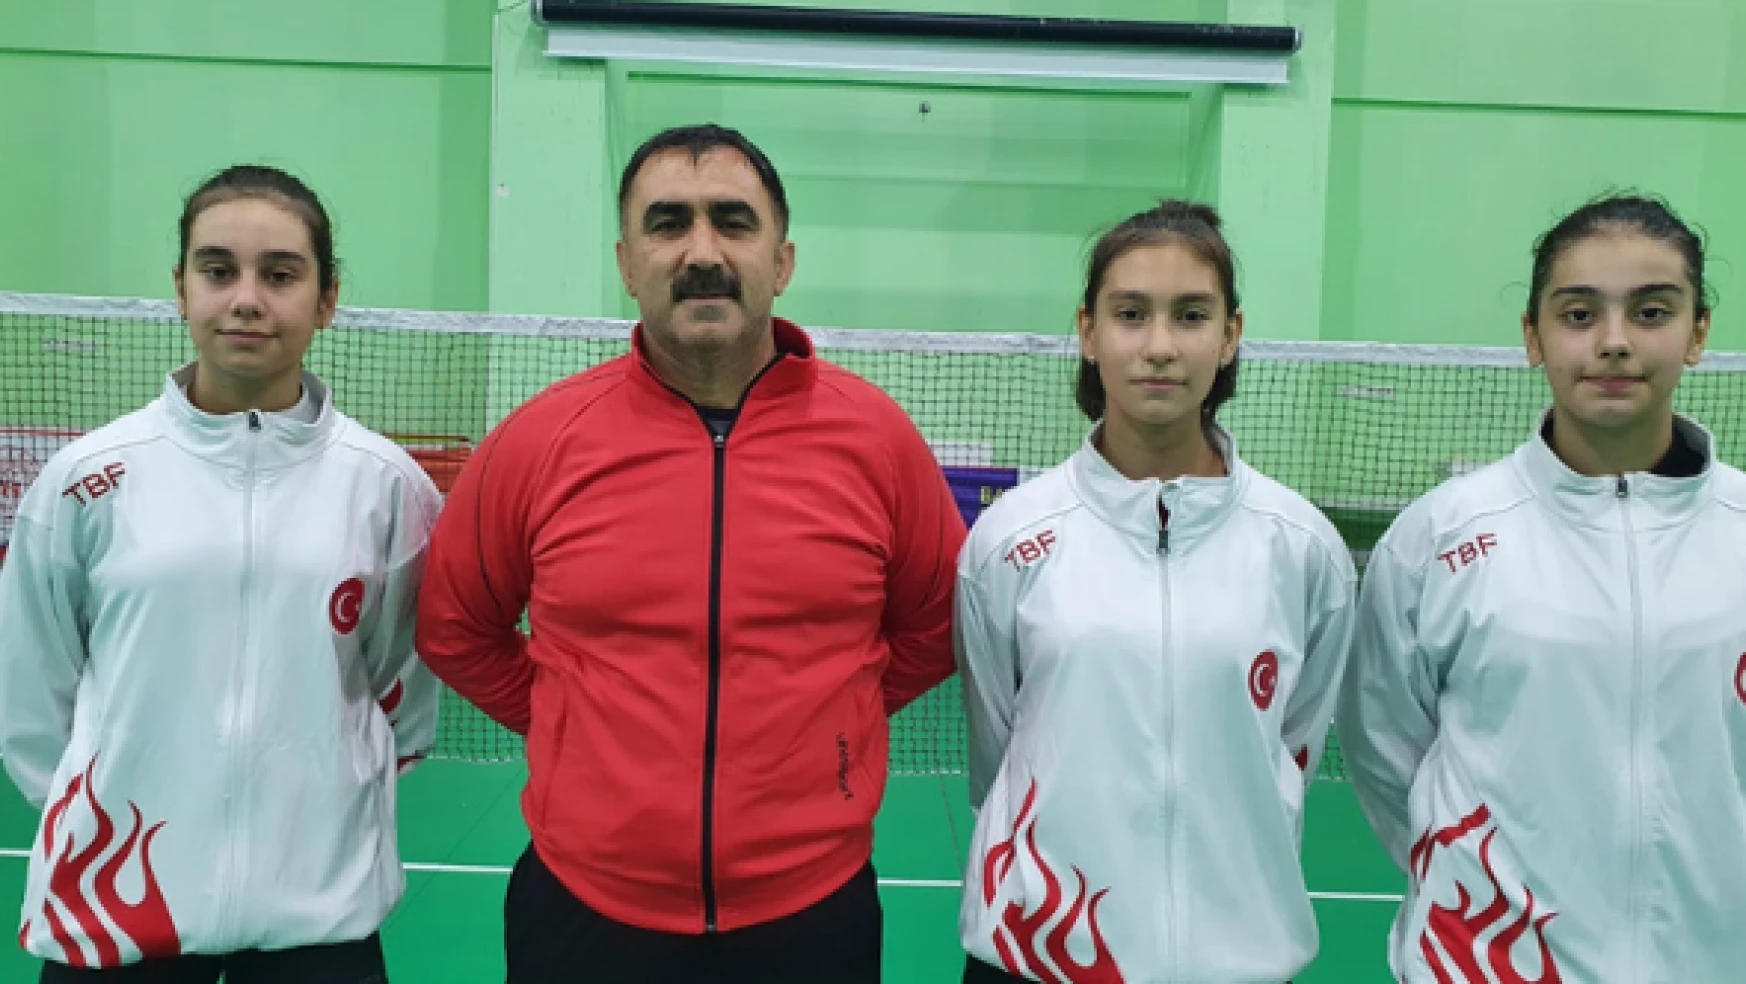 Erzincanlı milli sporcular U 15 Uluslararası Badminton turnuvasına katılıyor